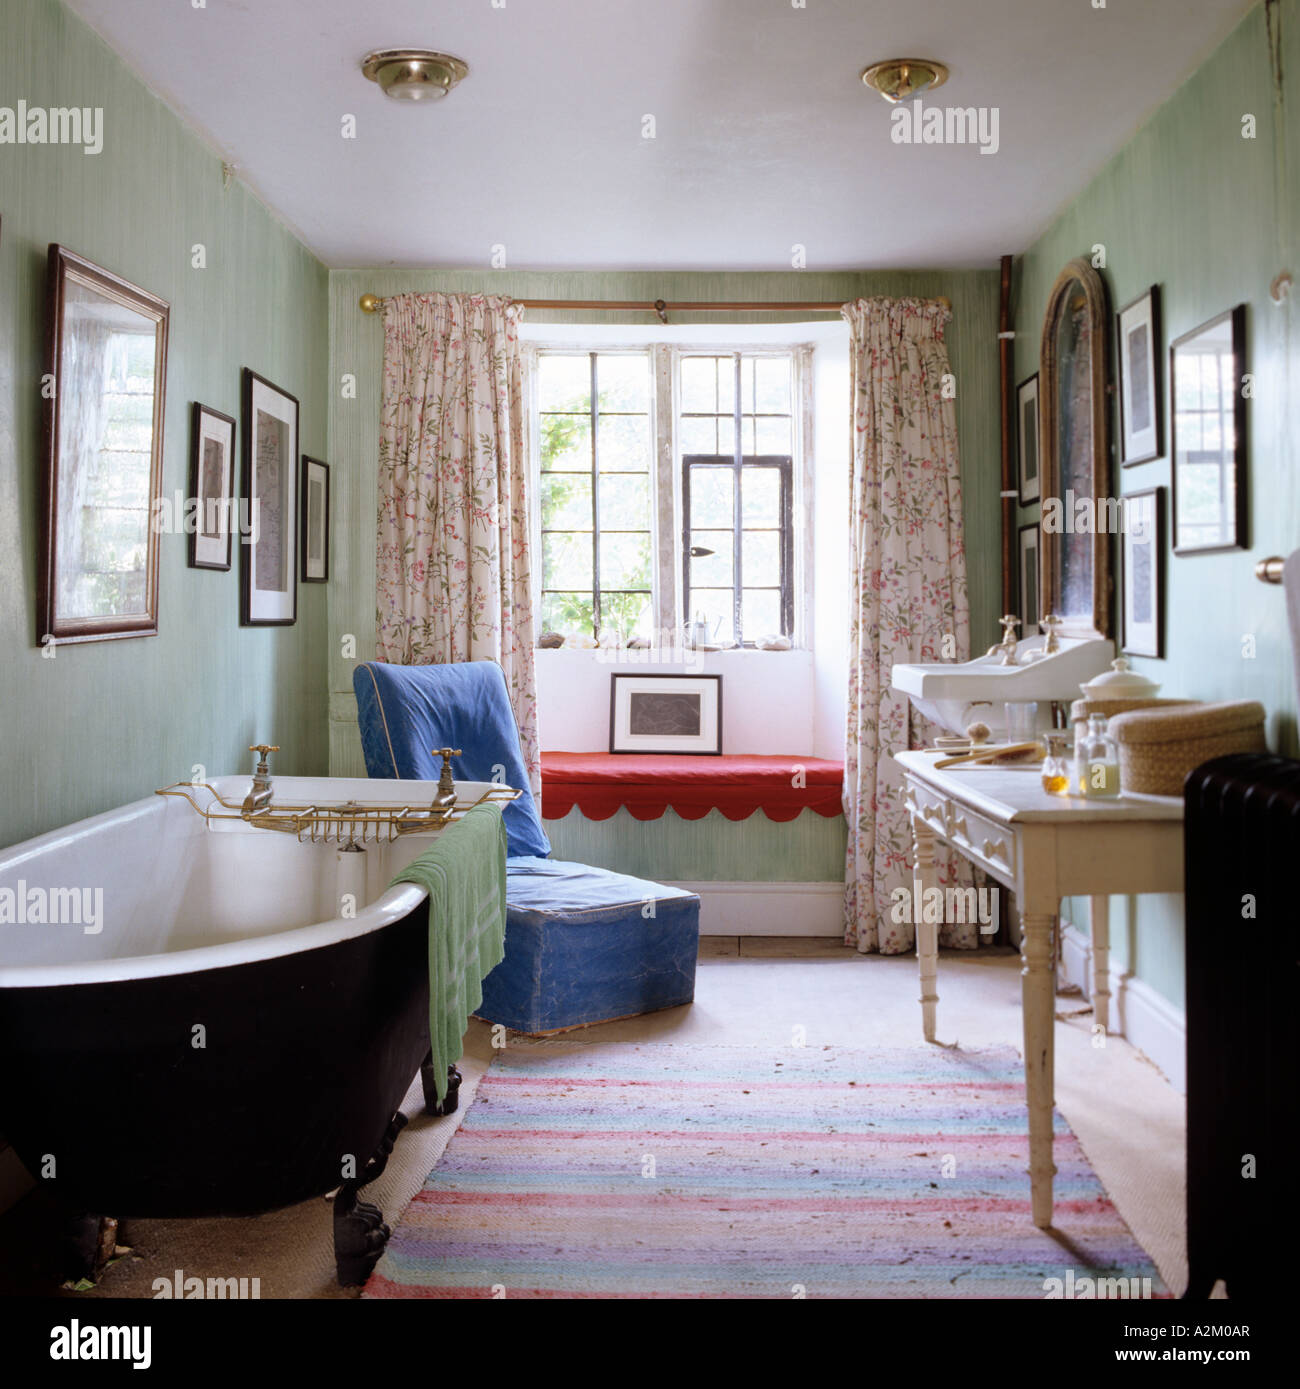 Badezimmer mit freistehender Badewanne, Schminktisch und alten altmodischen Becken. Stockfoto